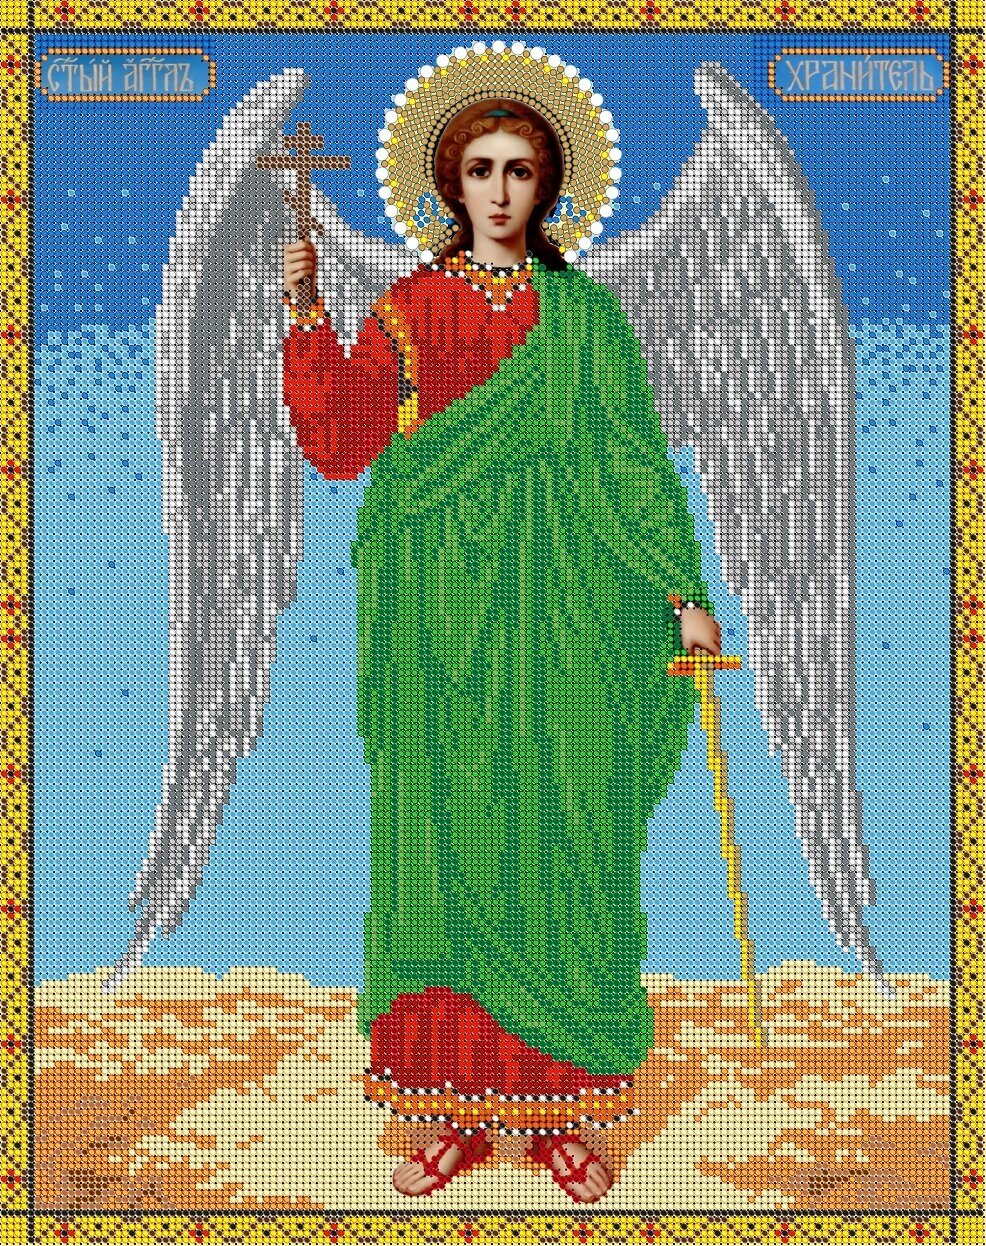 Вышивка бисером иконы Святой Ангел Хранитель 30*38см